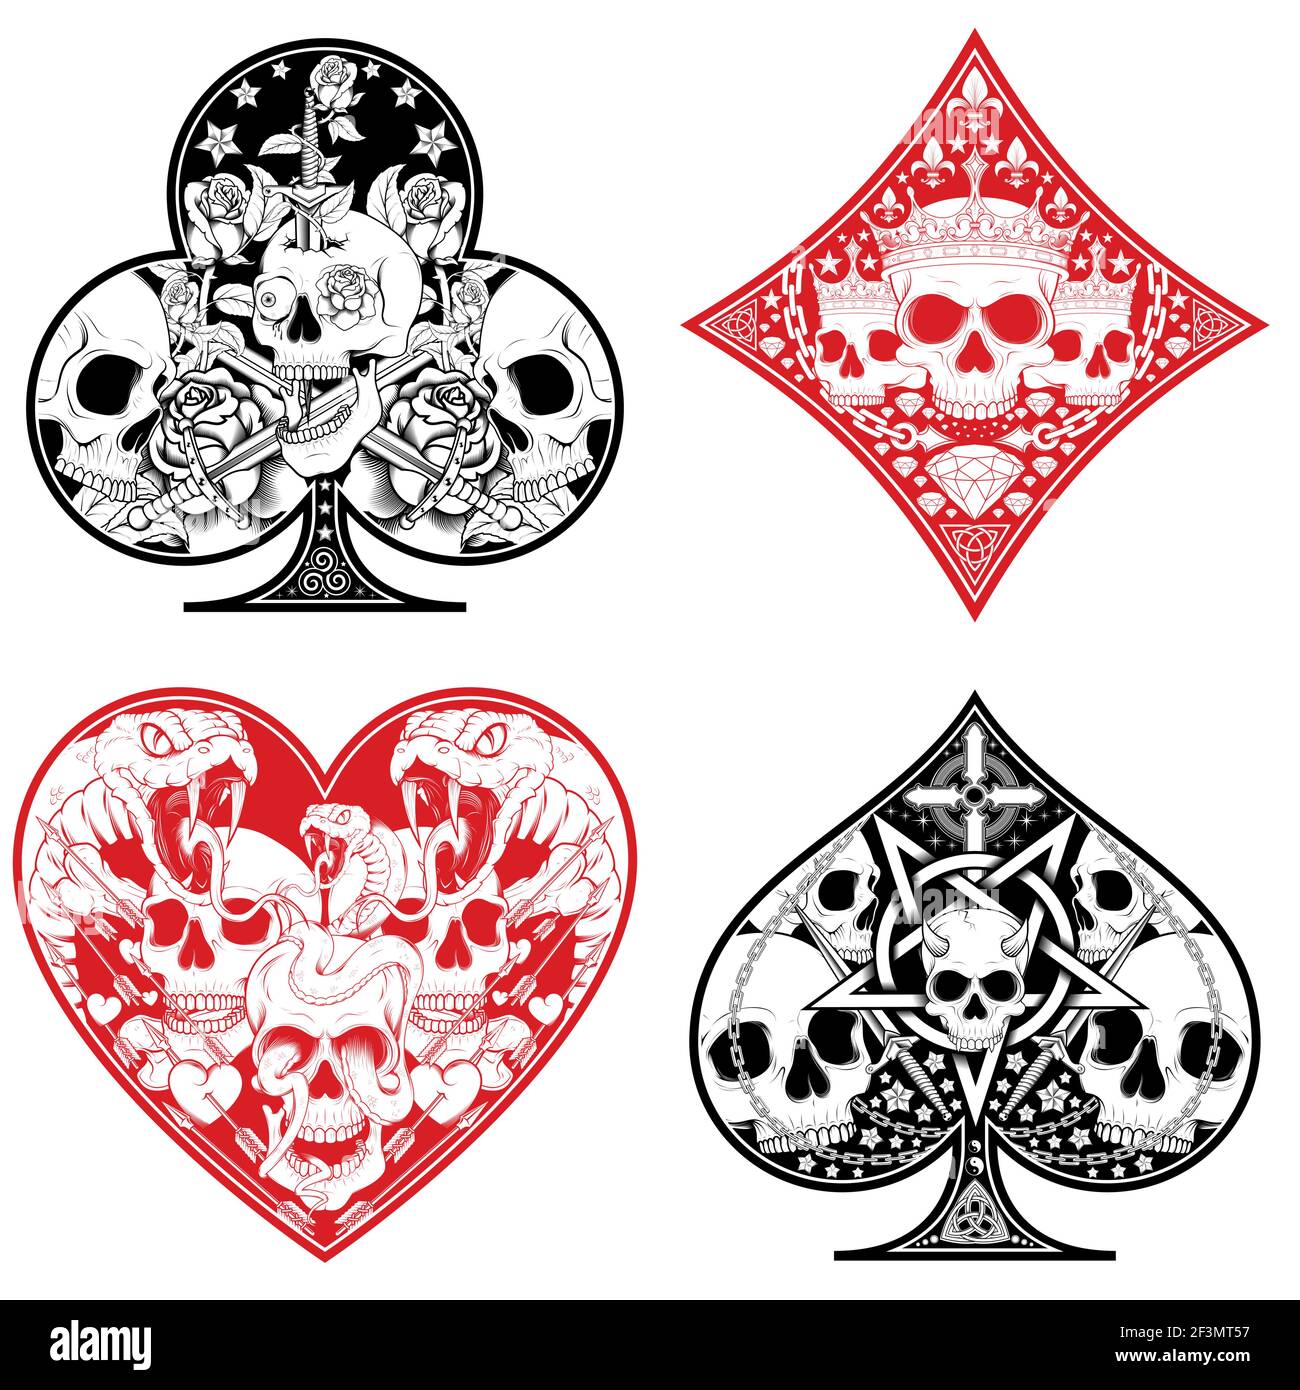 conception vectorielle des symboles de coeur, diamant, trèfle et poker ace avec différents motifs de crâne Illustration de Vecteur